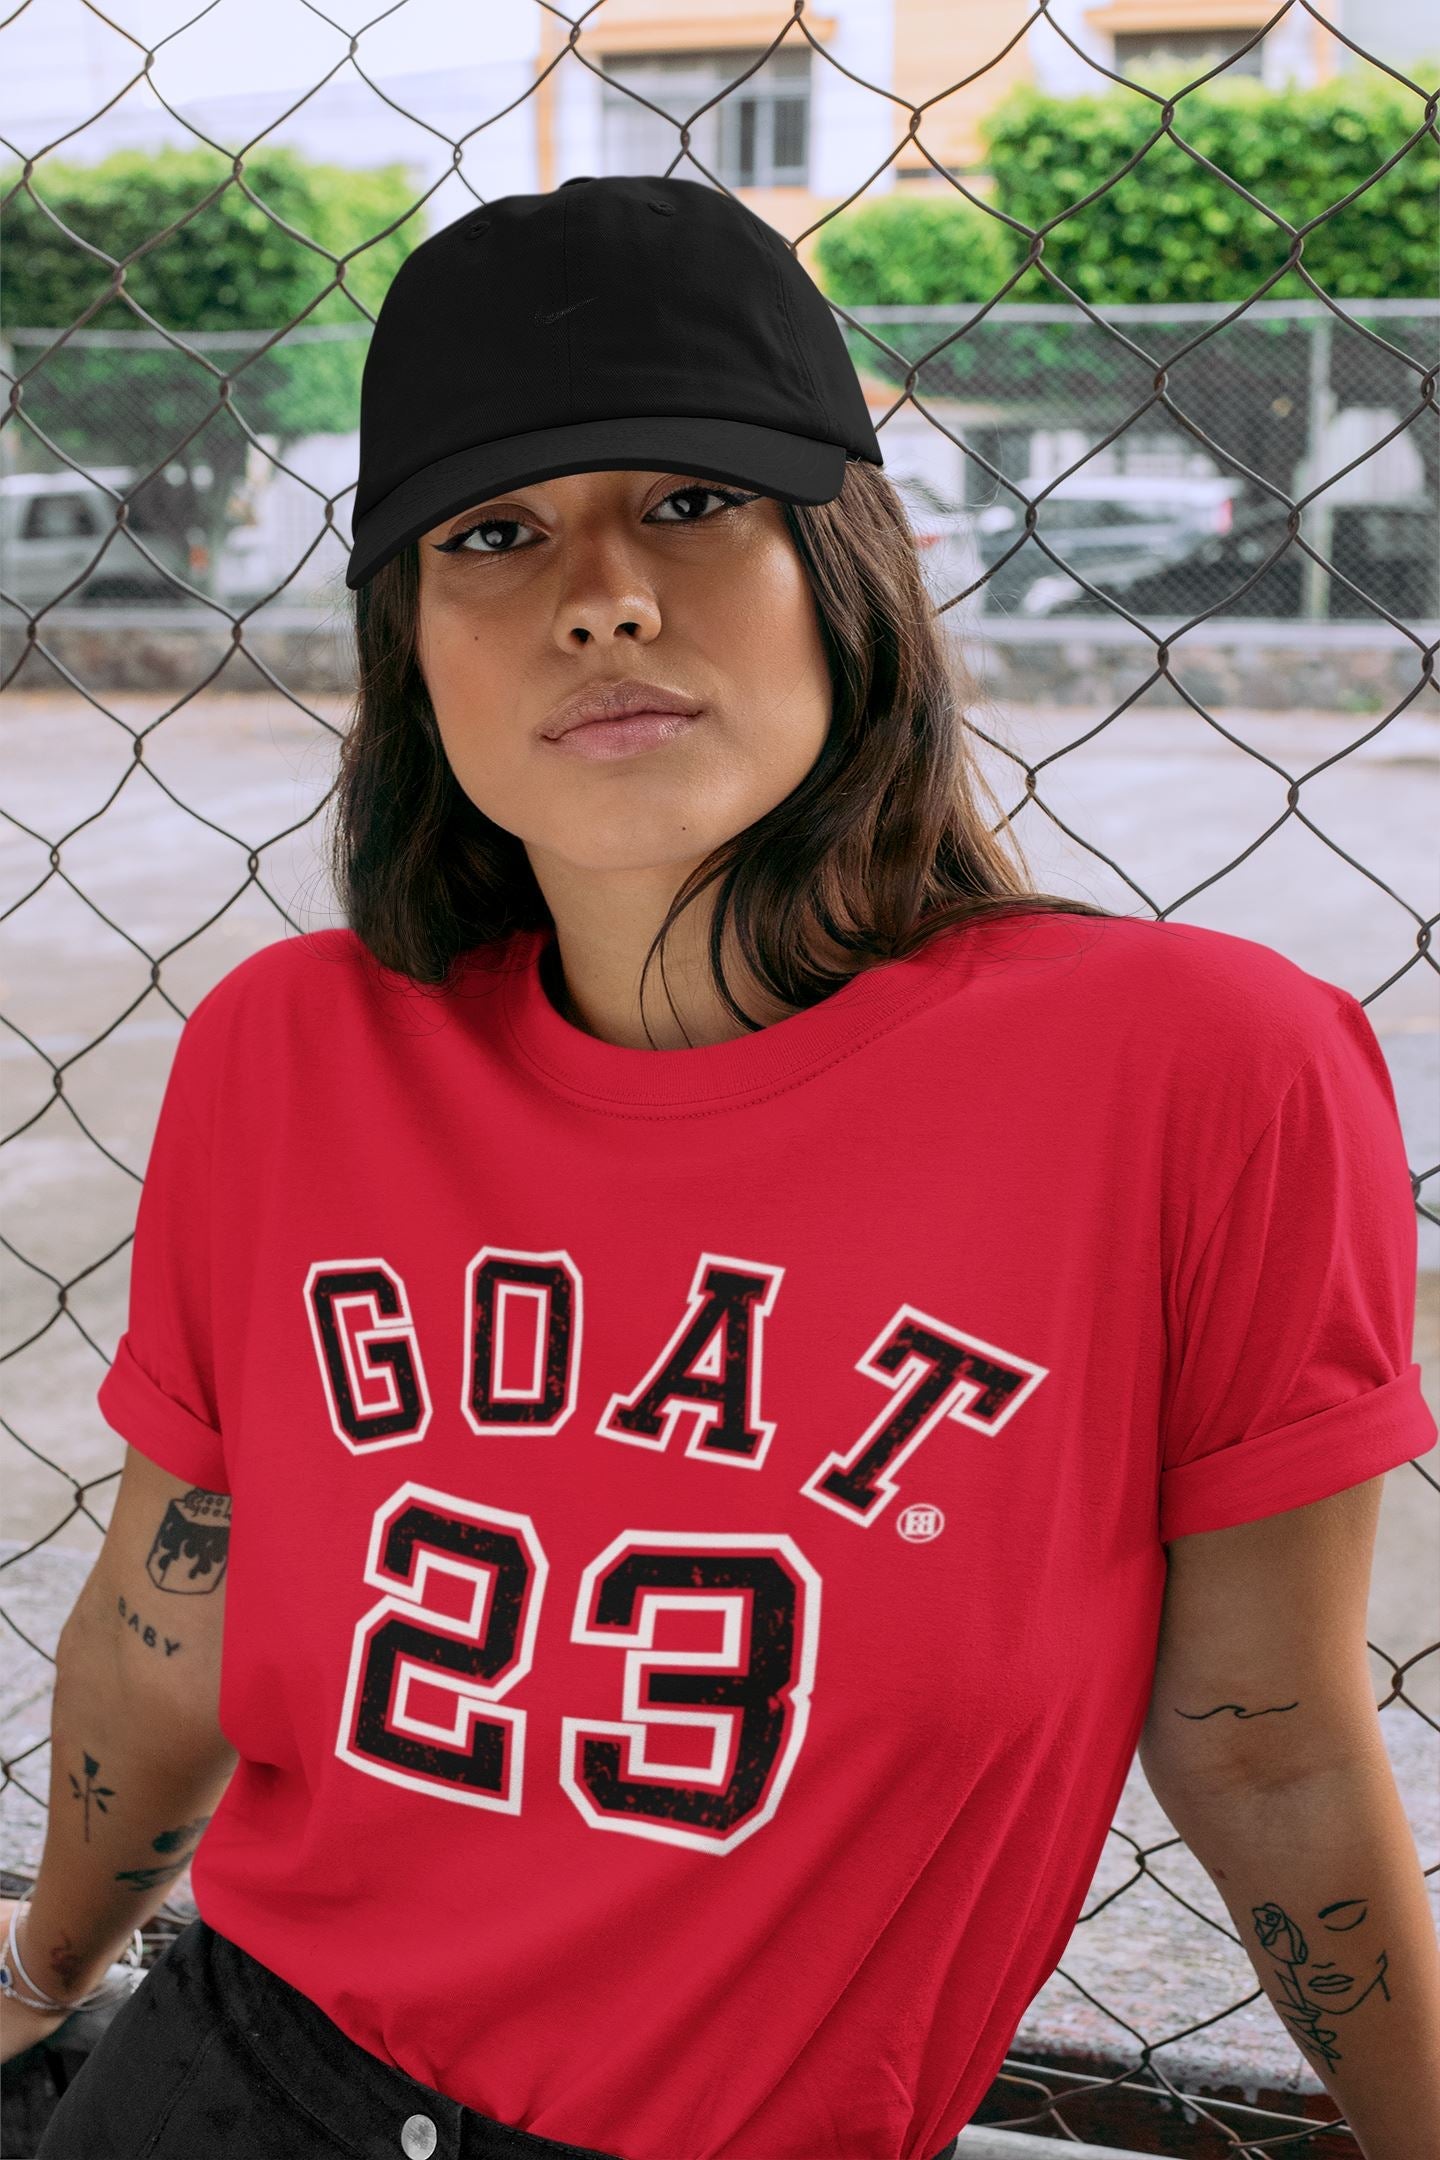 SNRT Sneaker Tee Jordan 4 Red Thunder | Goat 23 Unisex Shirts | SNRT Sneaker Tees Hoodie / Black / L